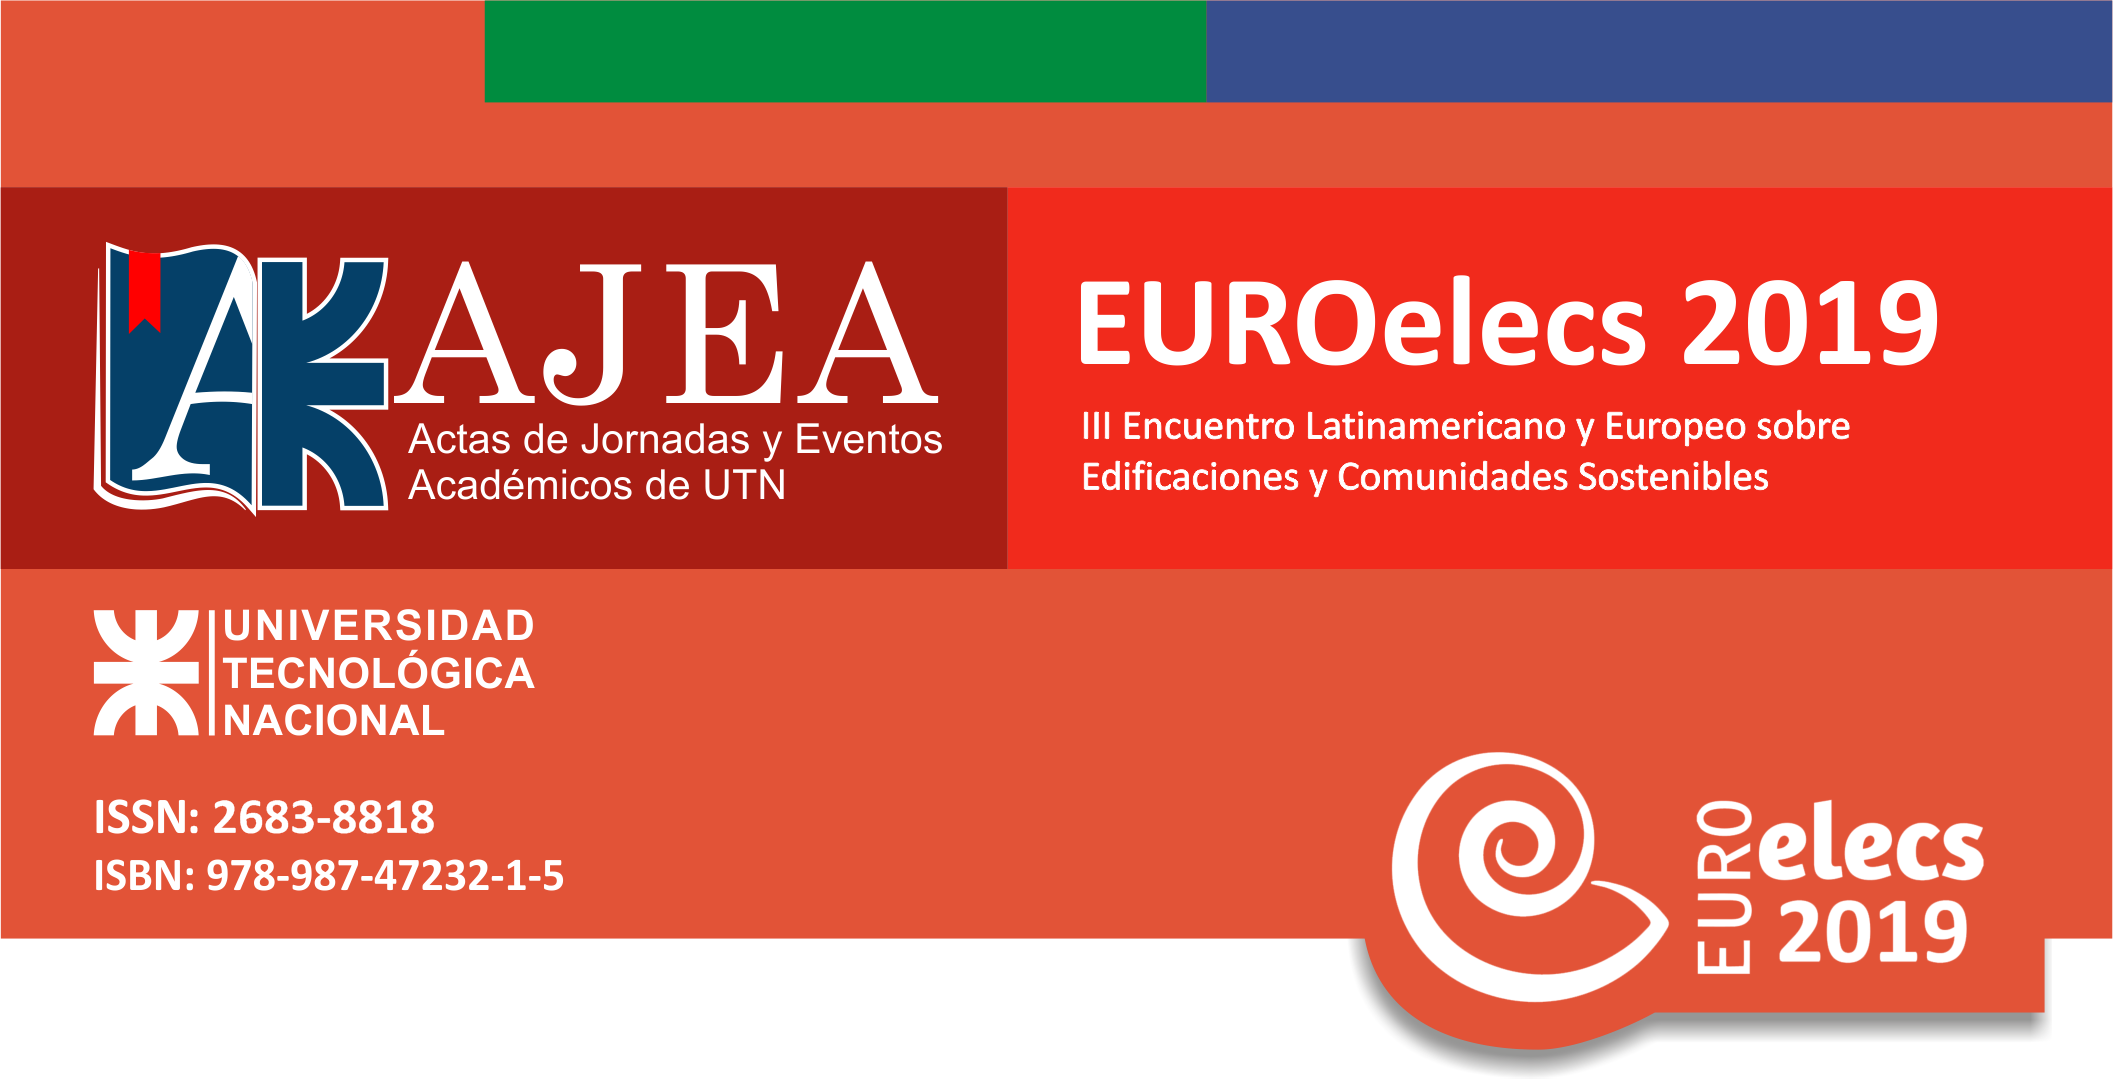 					Ver Núm. 3 (2019): Encuentro Latinoamericano y Europeo sobre Edificaciones y Comunidades Sostenibles
				